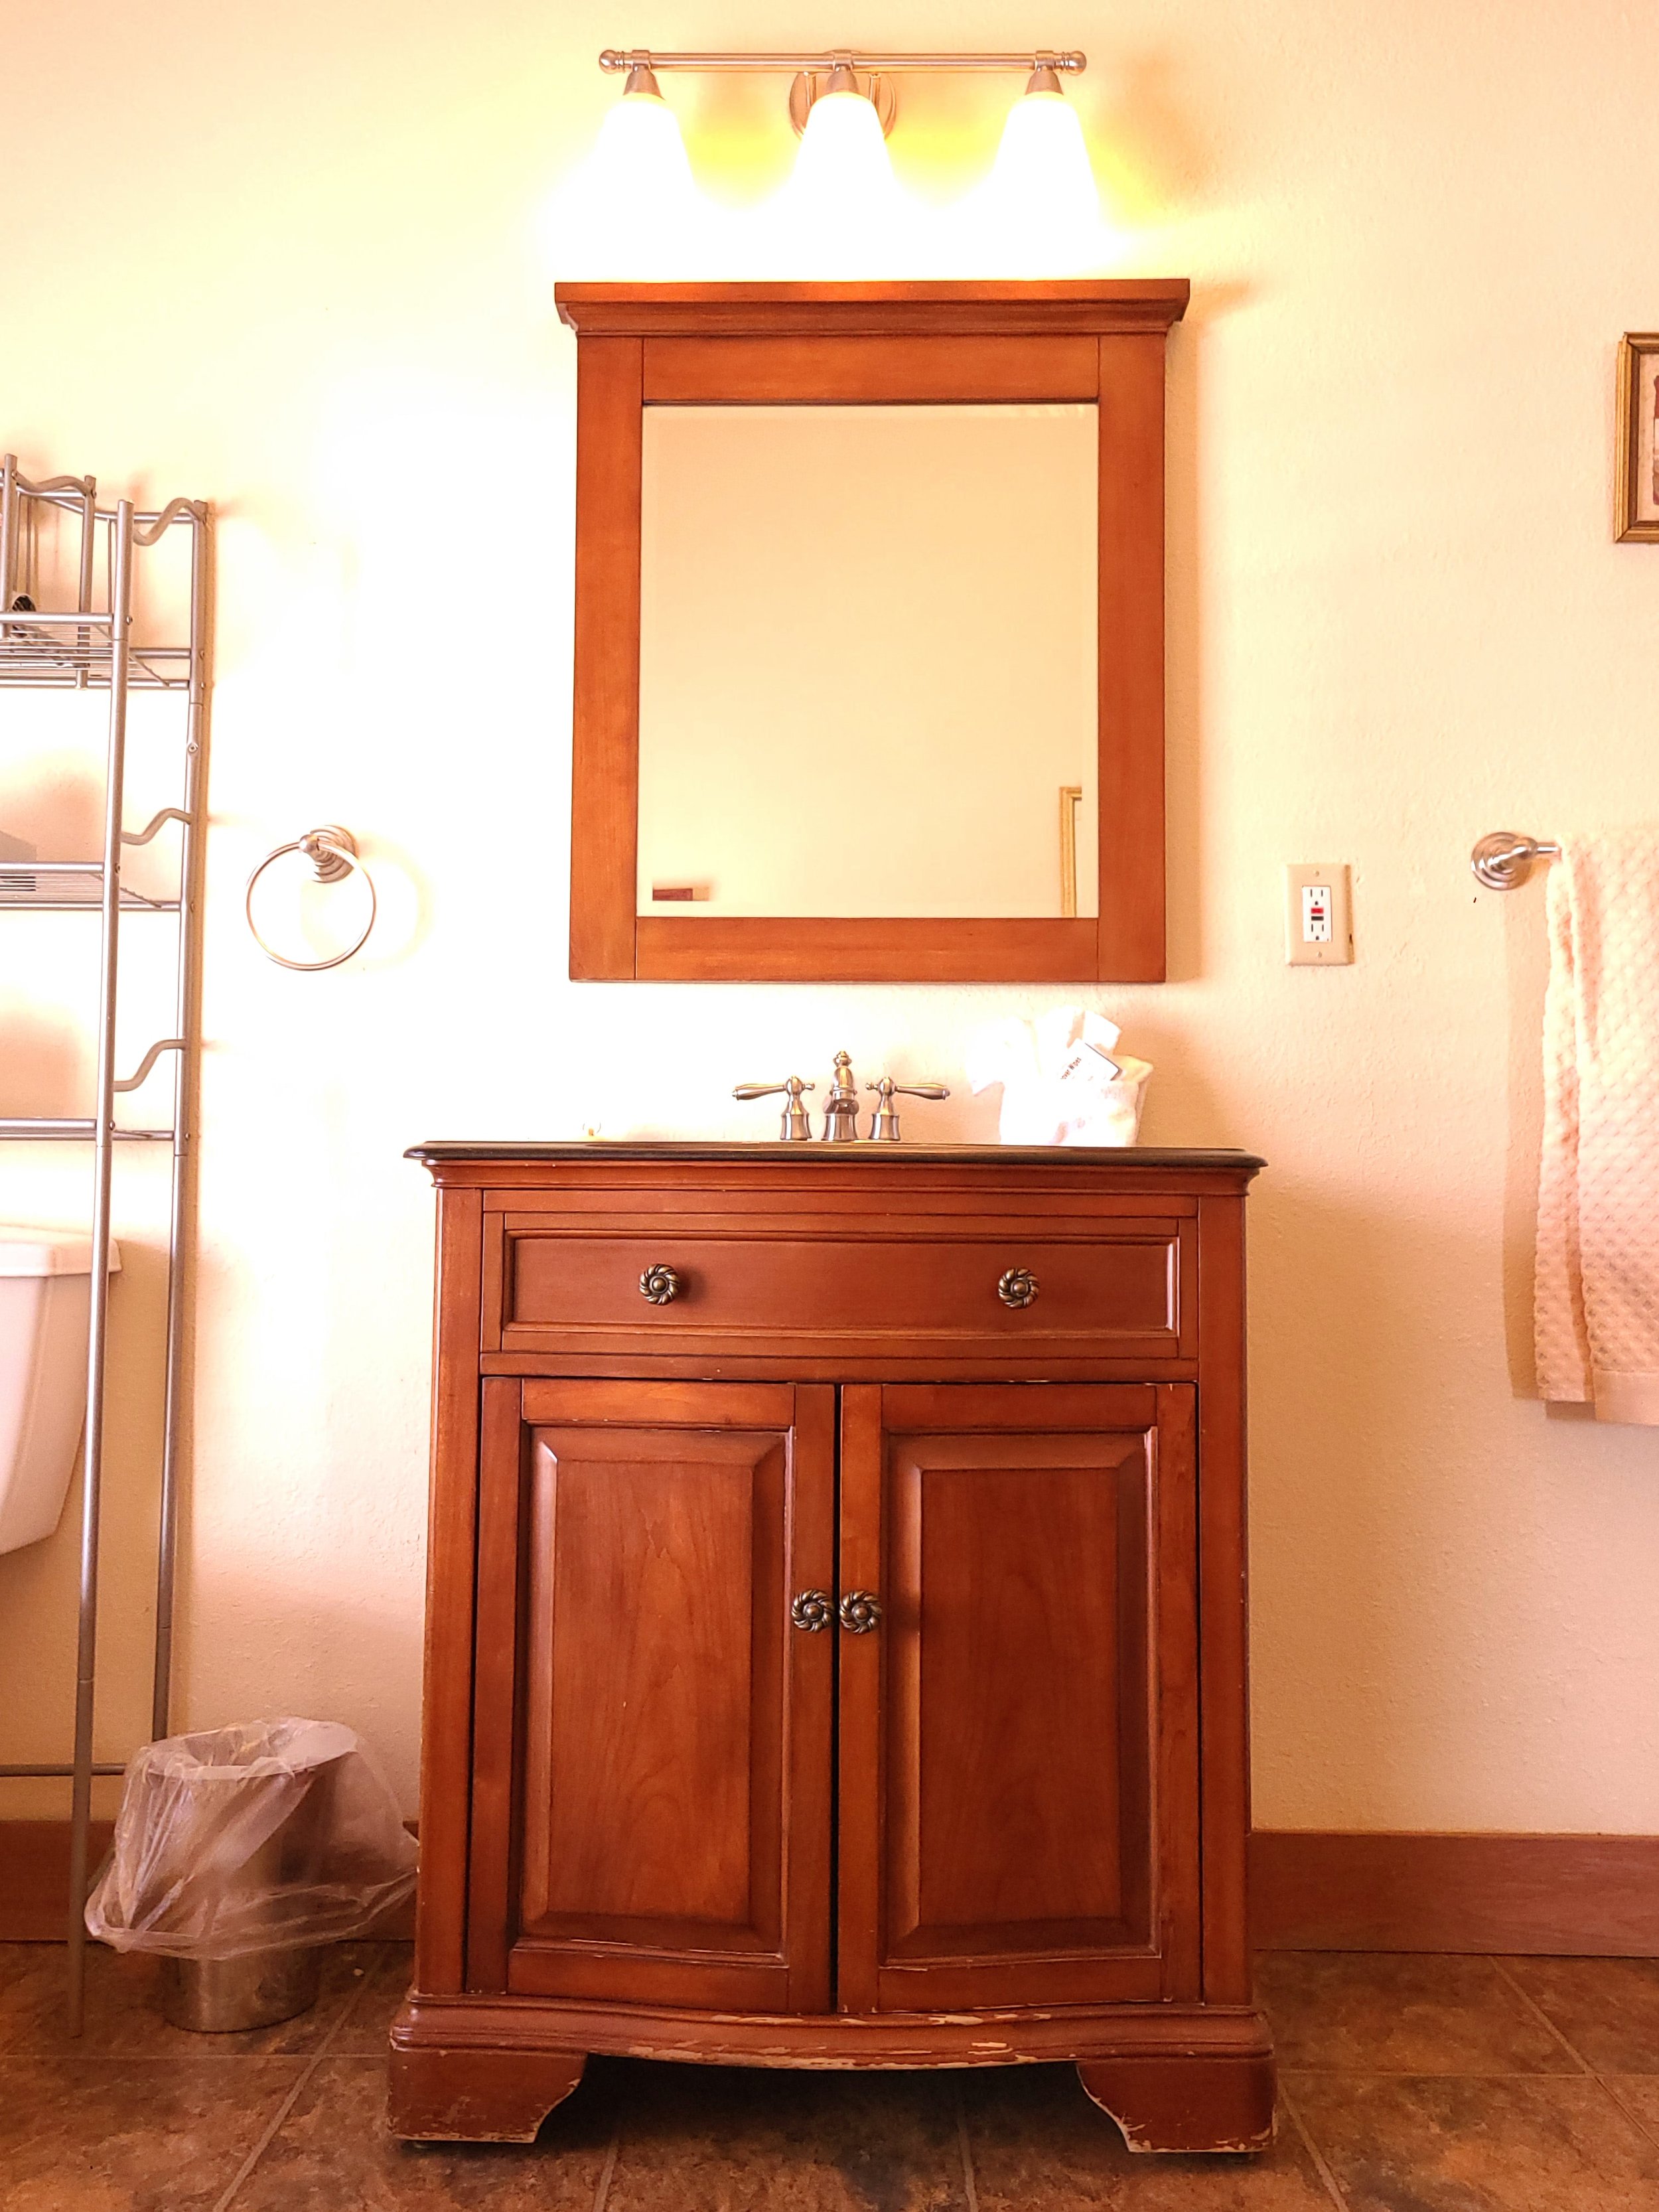 coud-peak-bathroom-mirror.jpg